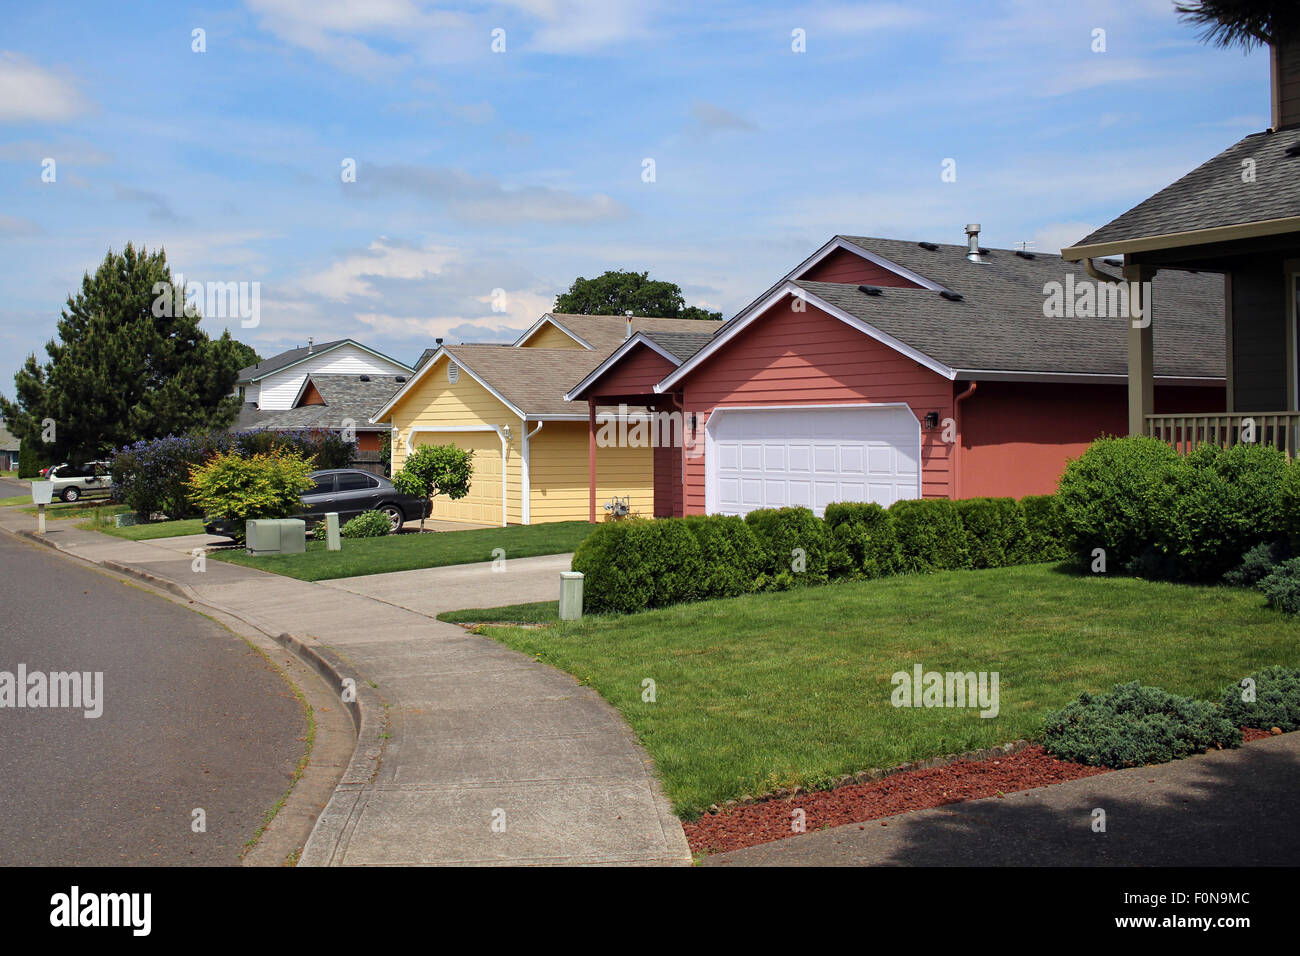 Row of houses in suburban neighborhood Stock Photo